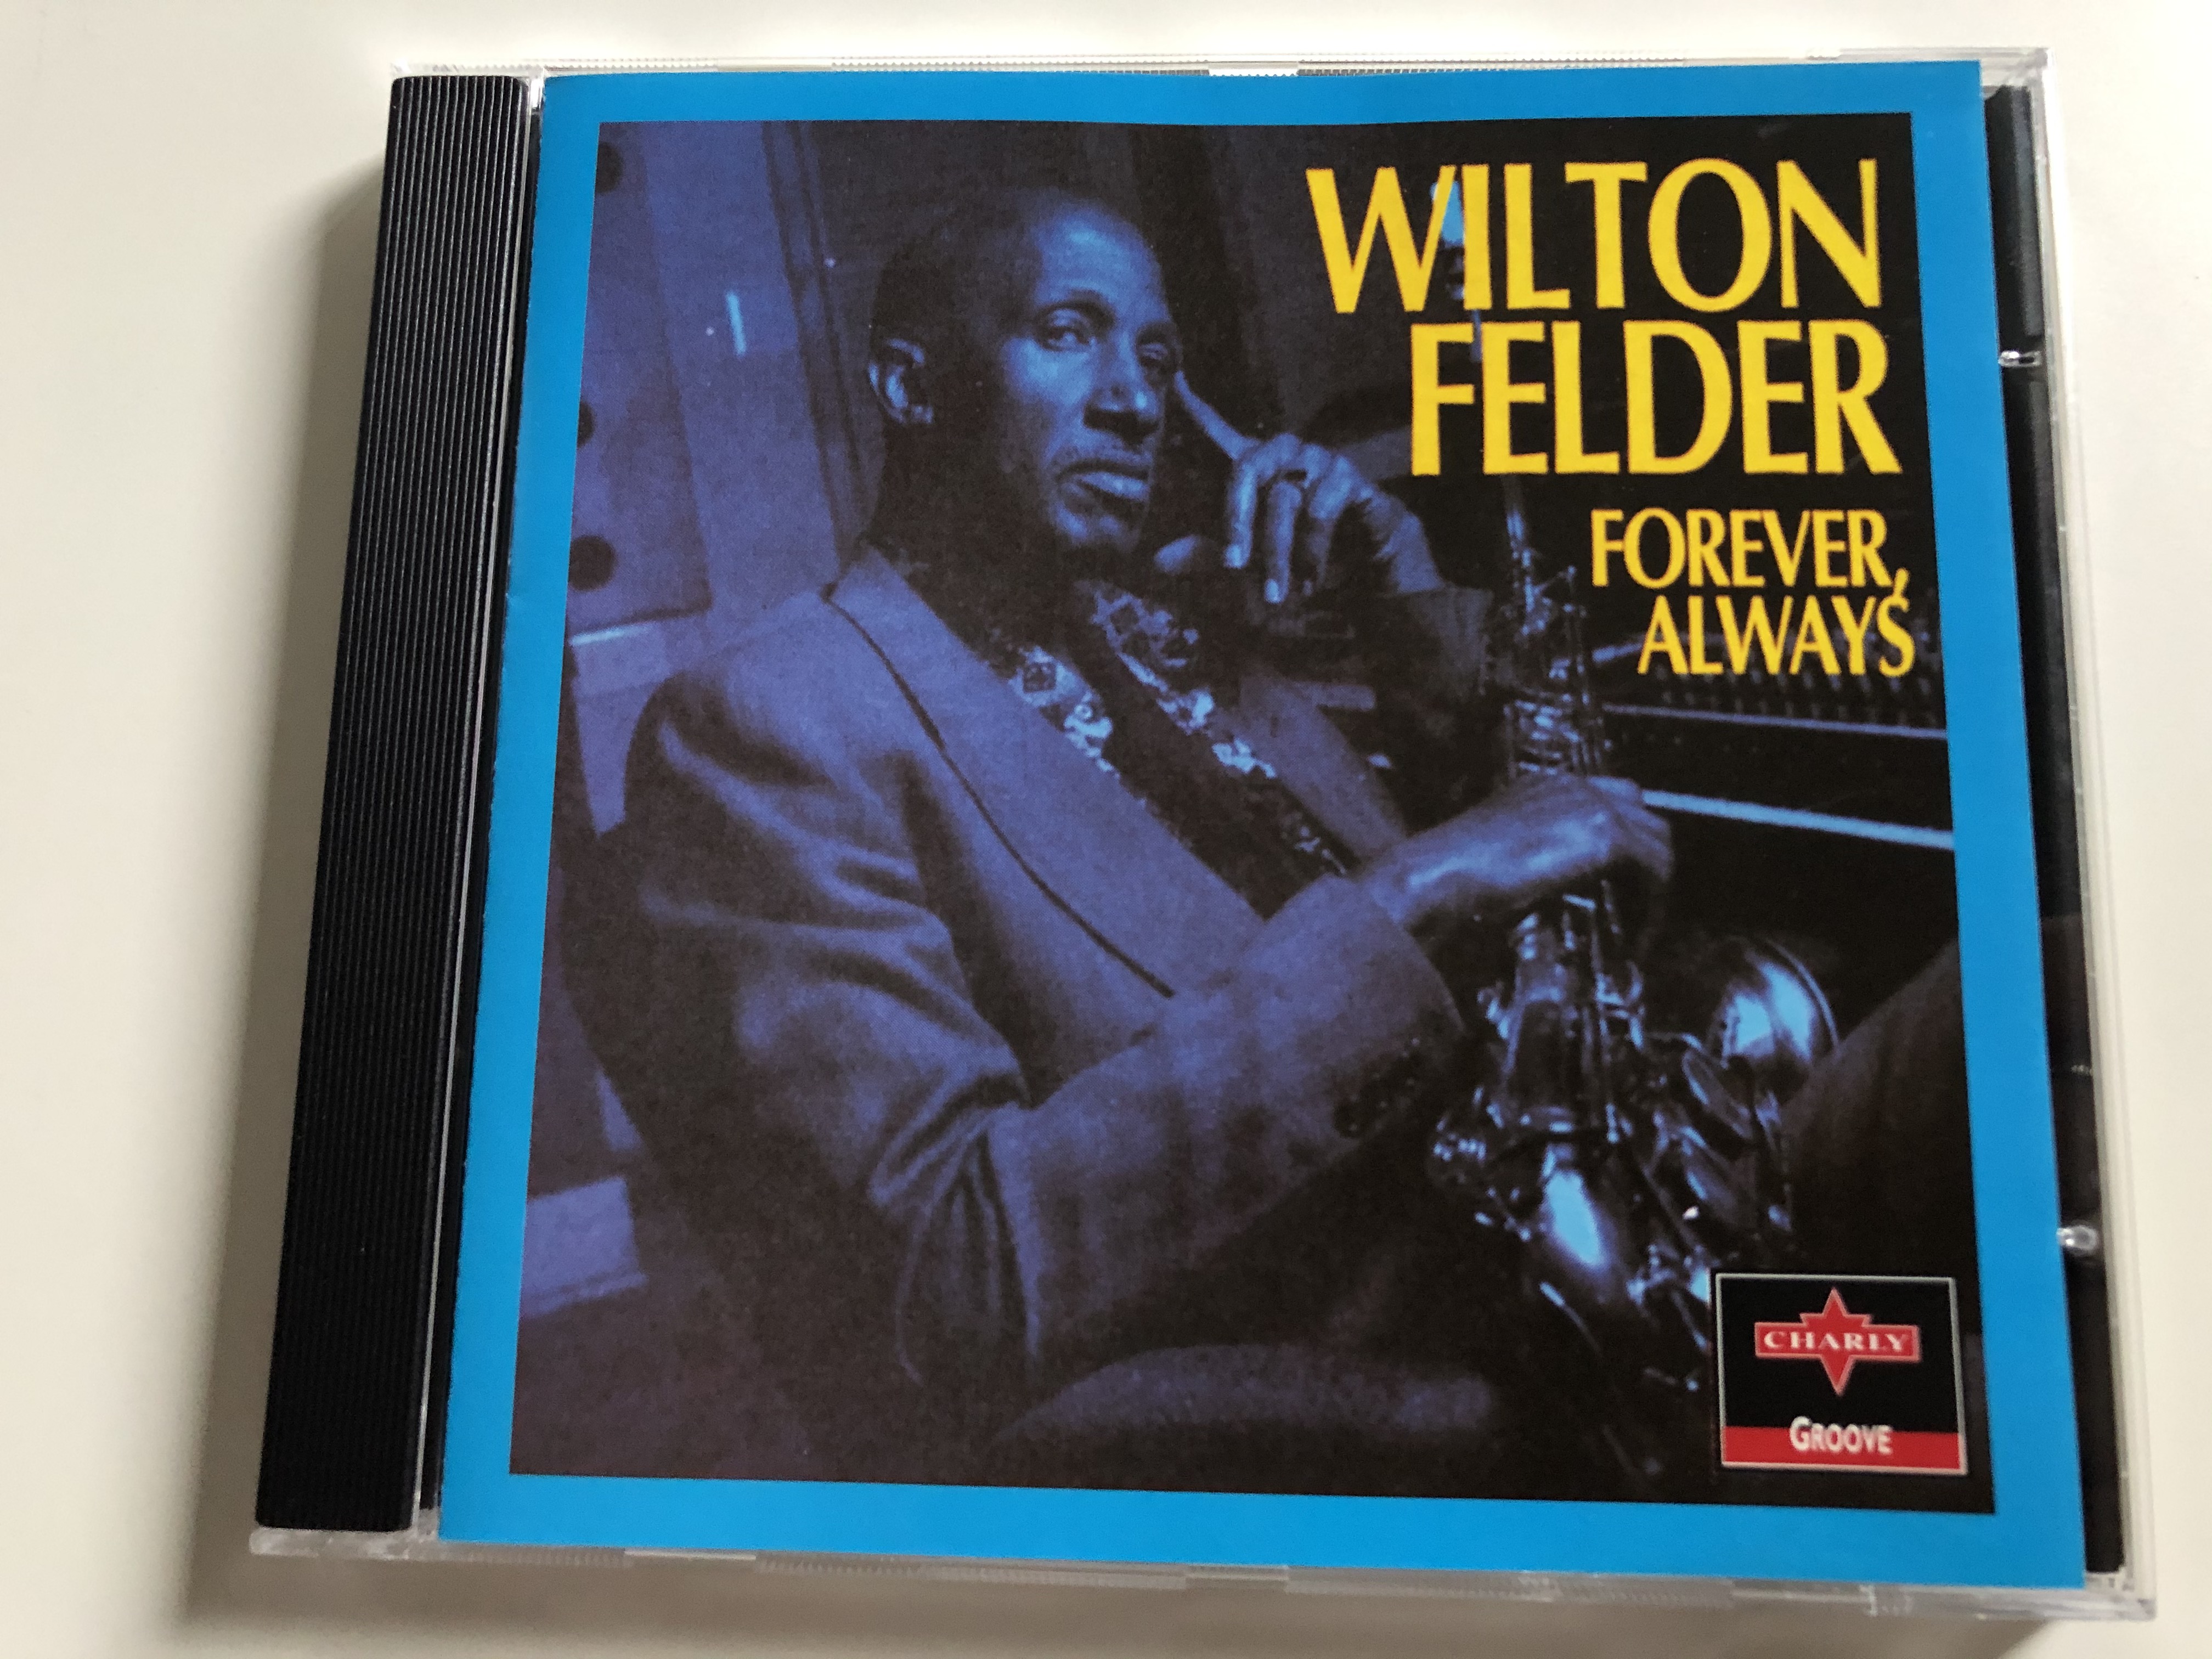 wilton-felder-forever-always-charly-groove-audio-cd-1995-cpcd-8141-1-.jpg